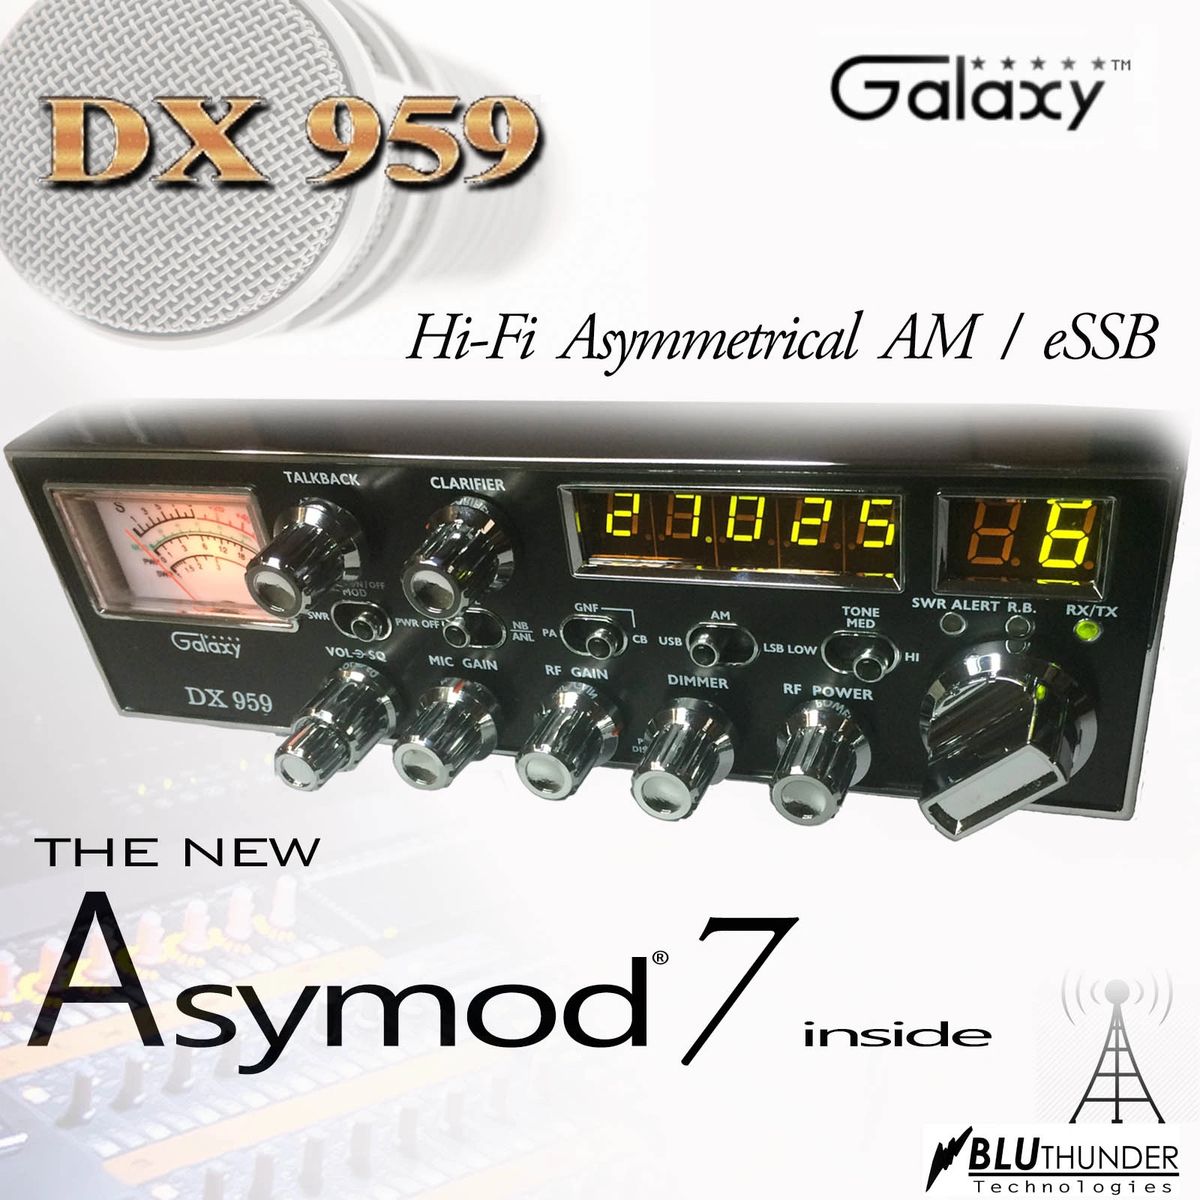 Asymod ™ and the Galaxy DX-959 Hi-Fi Asymmerical AM and eSSB